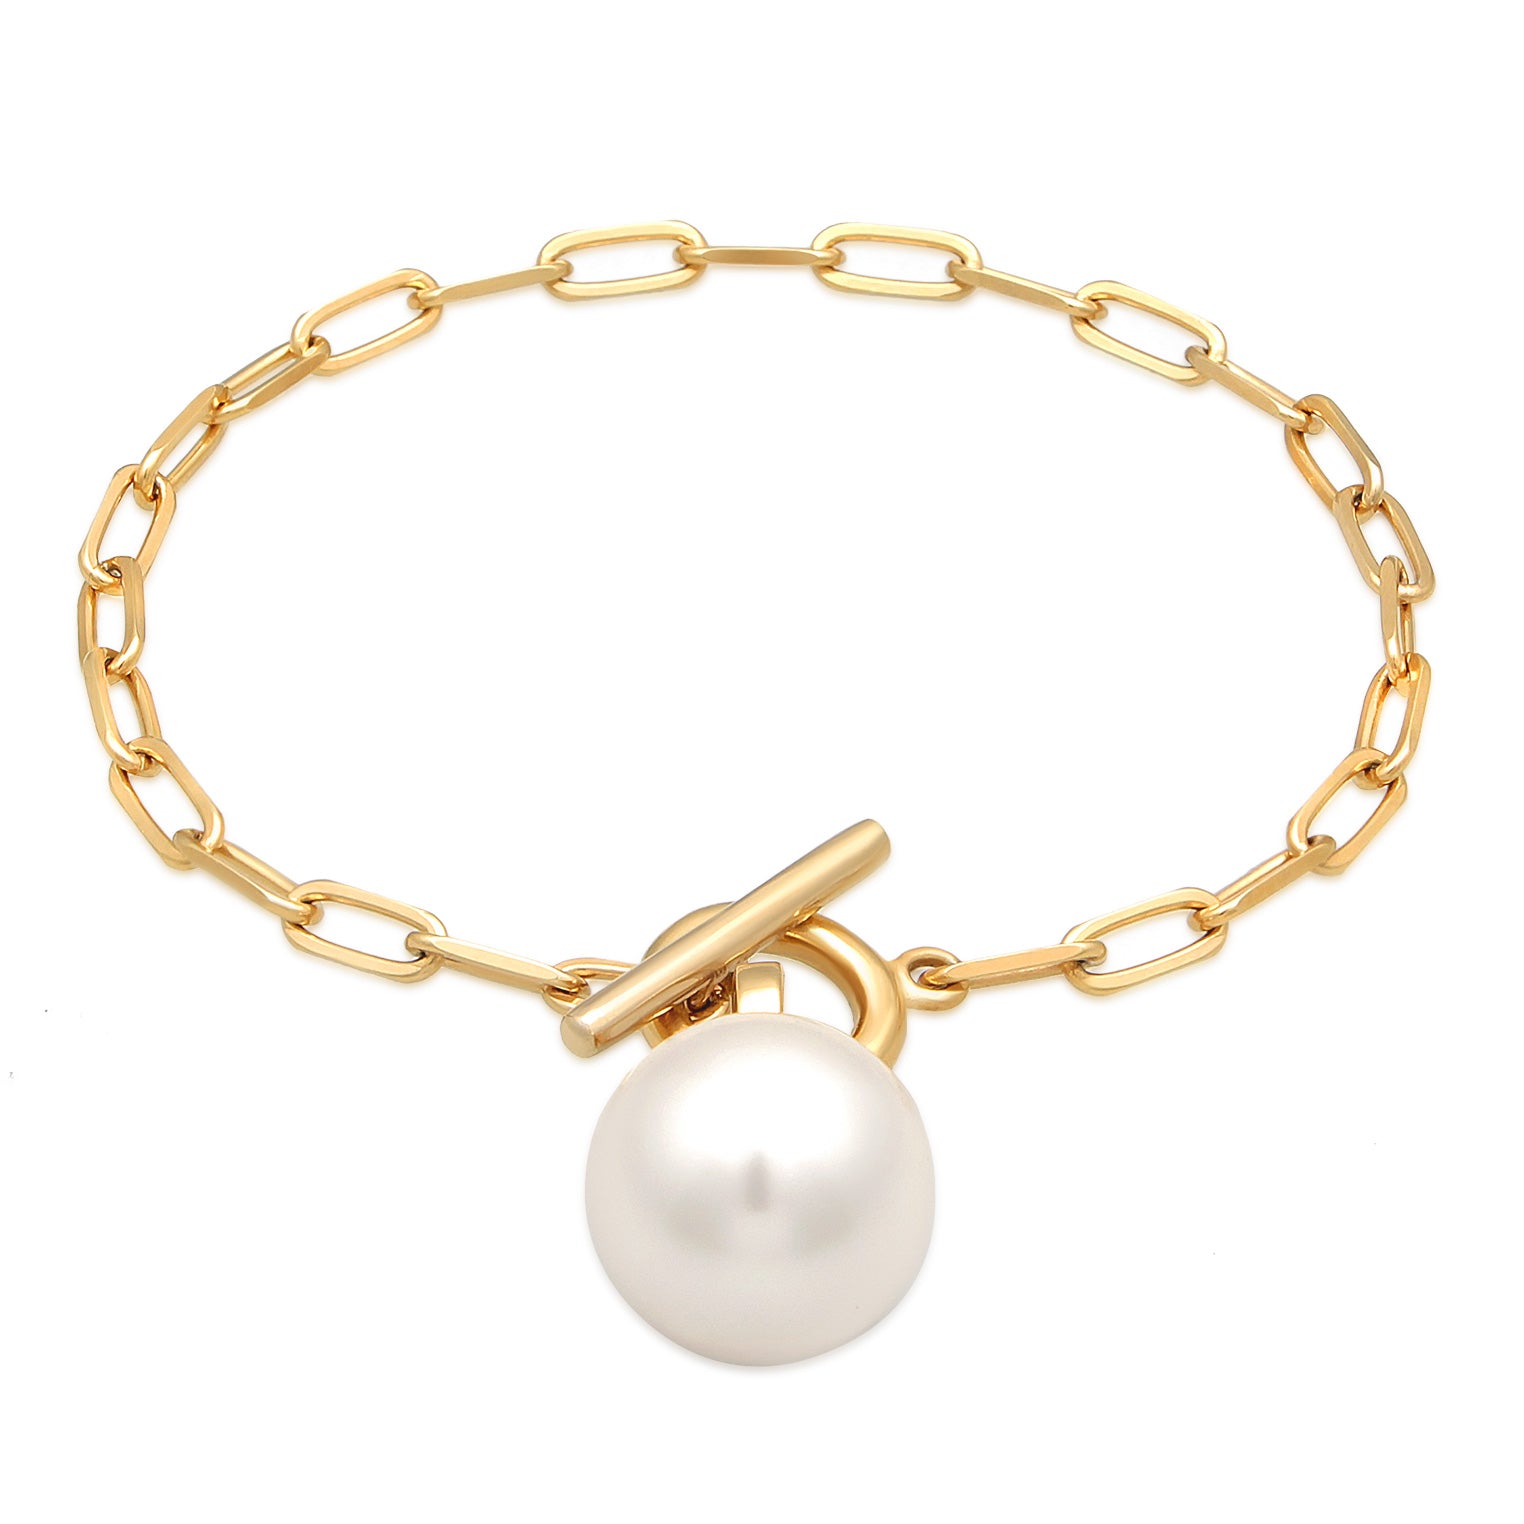 Armbänder im Online-Shop von Elli kaufen – Elli Jewelry